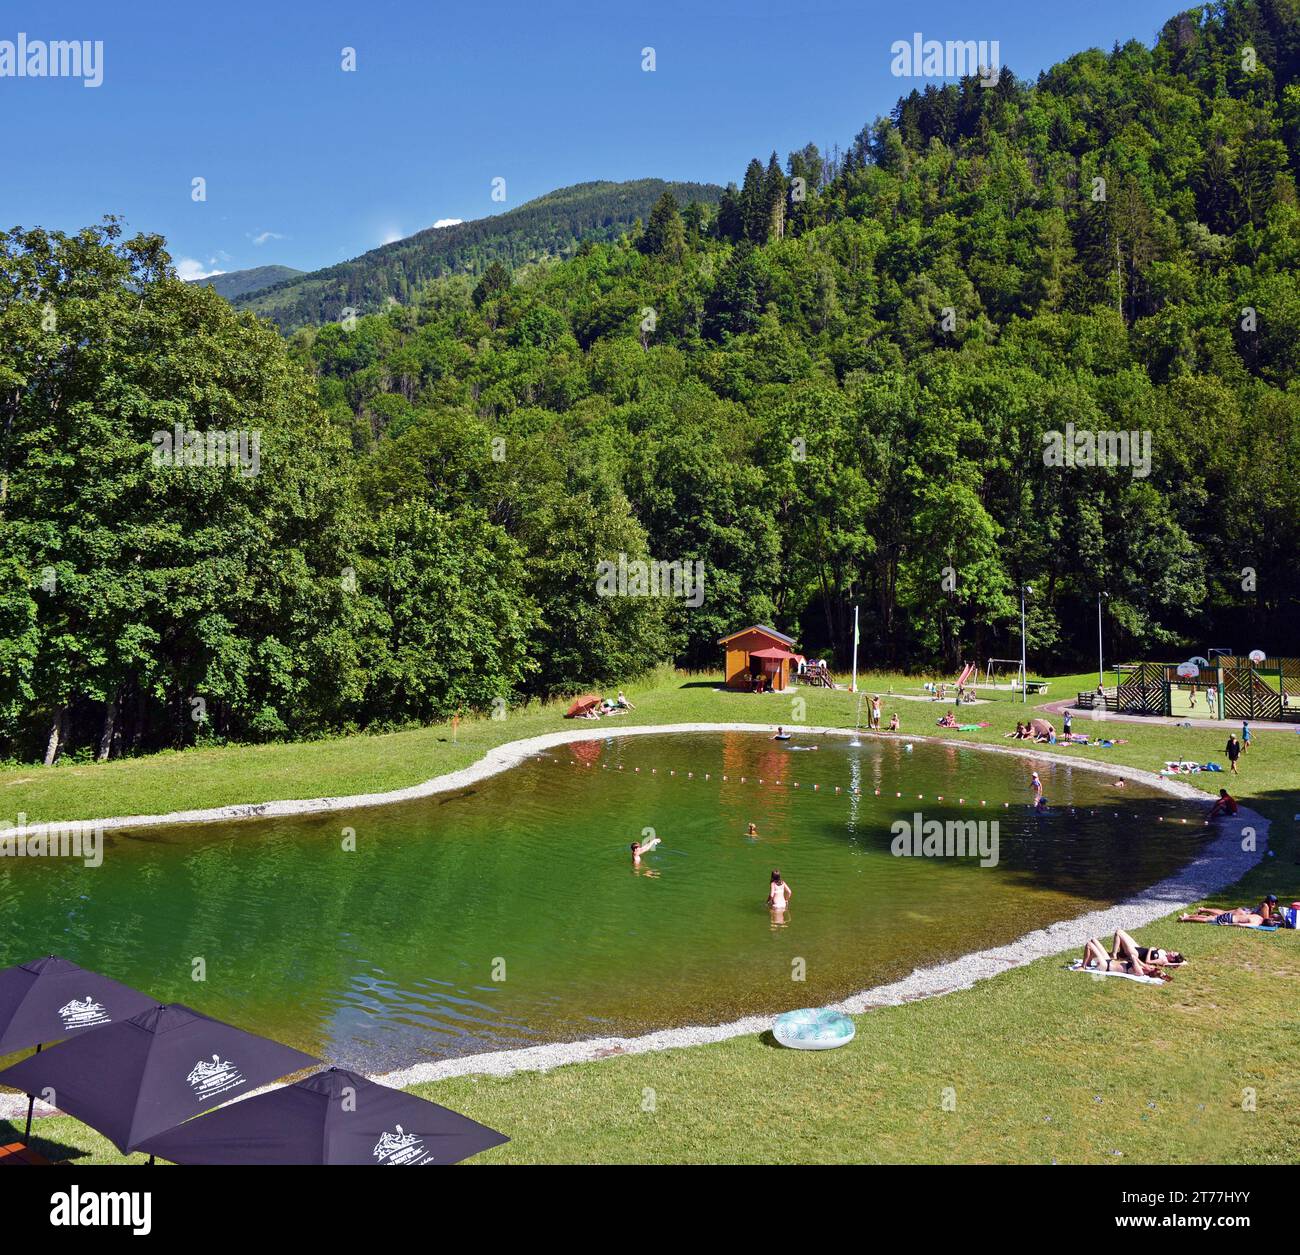 Personnes au petit lac artificiel, France, Savoie, vallée de la Maurienne, Saint Colomban des Villards Banque D'Images